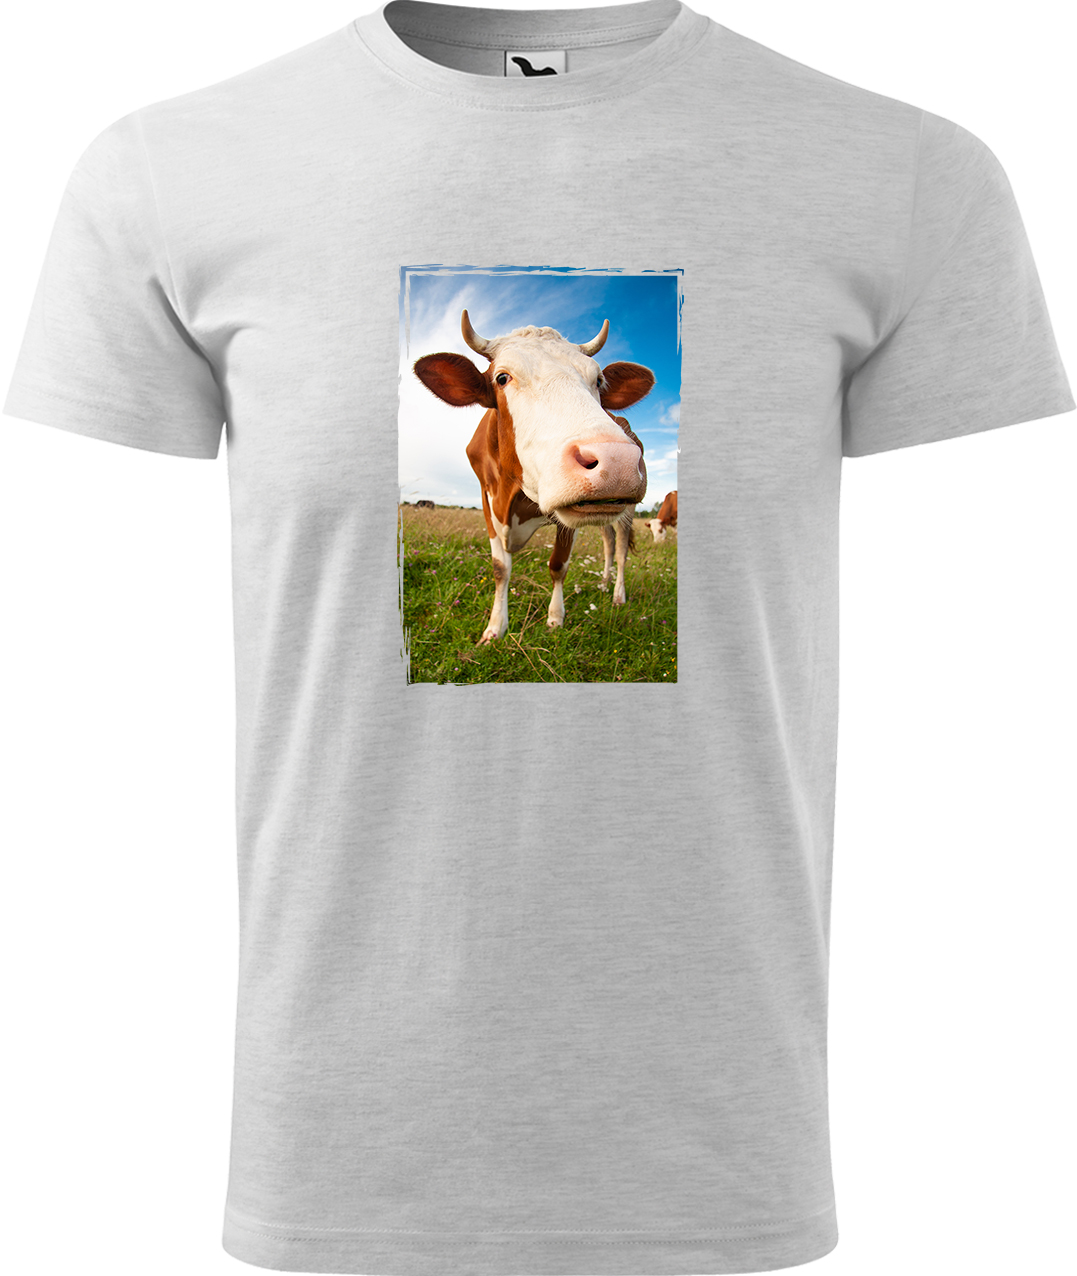 Pánské tričko s krávou - Na pastvě Velikost: L, Barva: Světle šedý melír (03), Střih: pánský